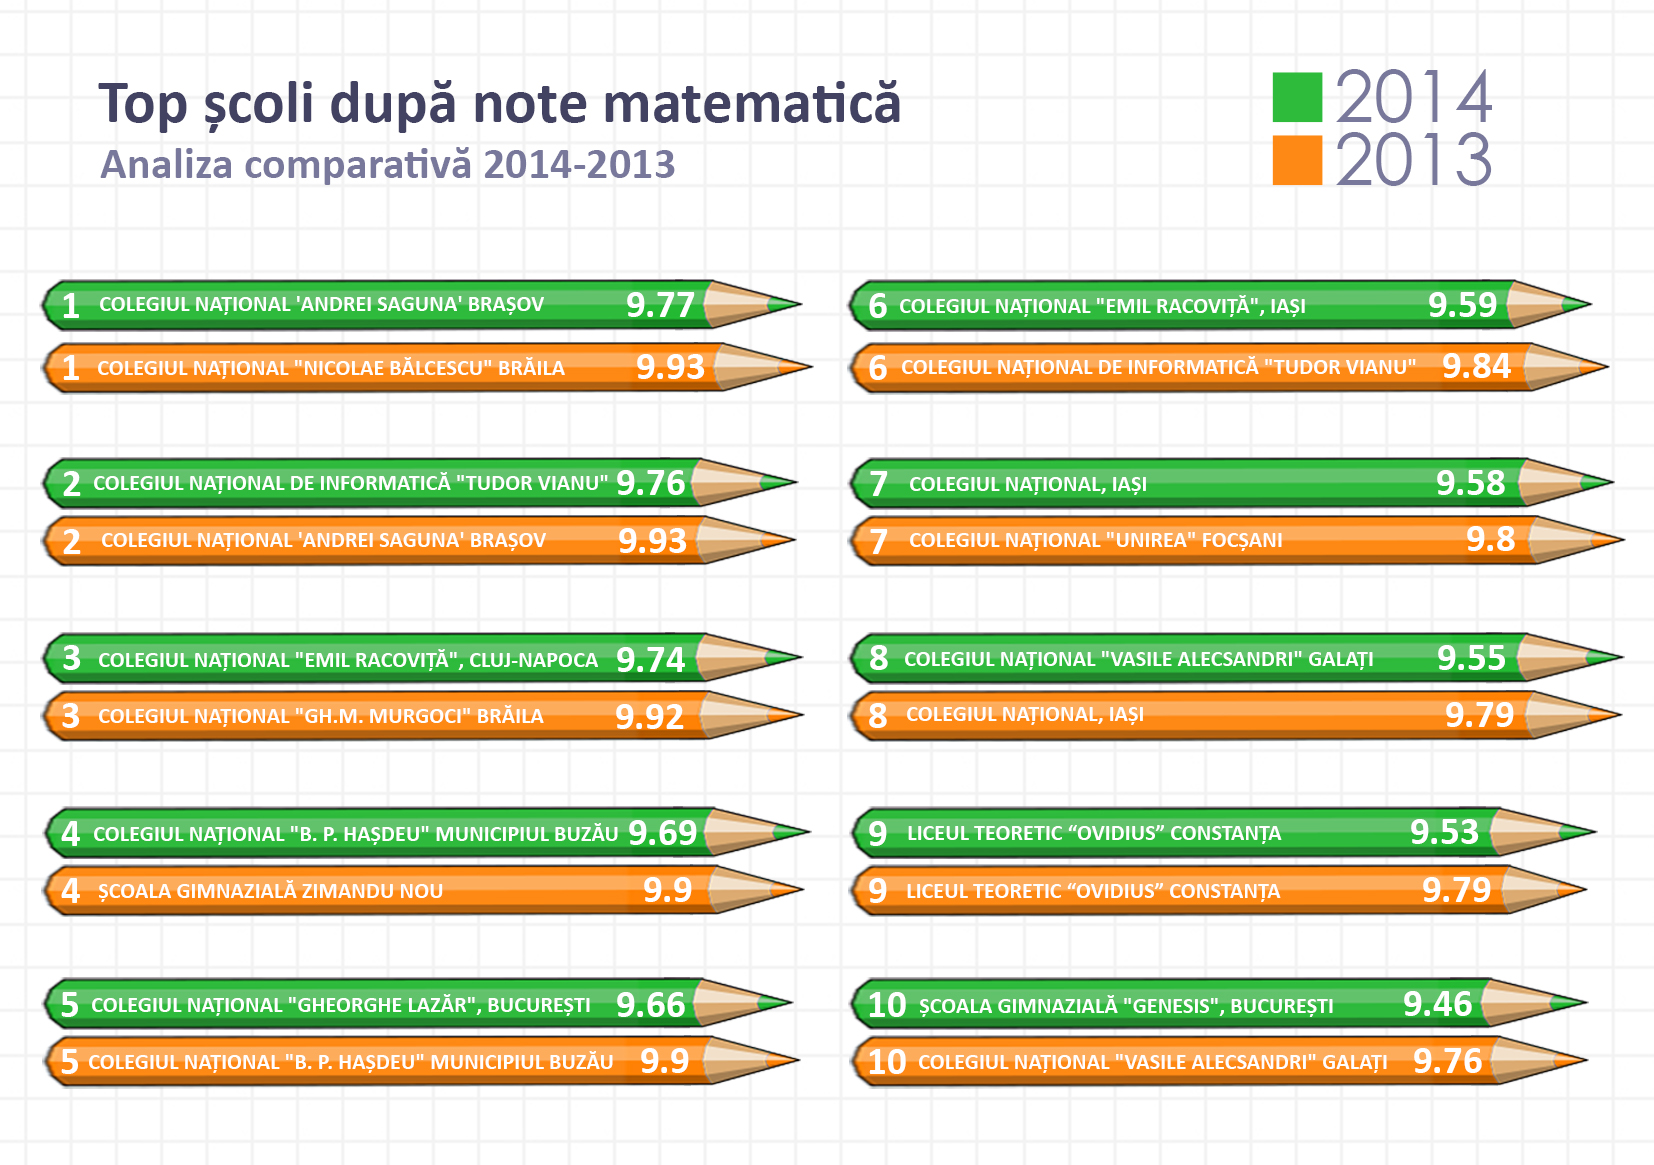 Top scoli_rezultate matematica